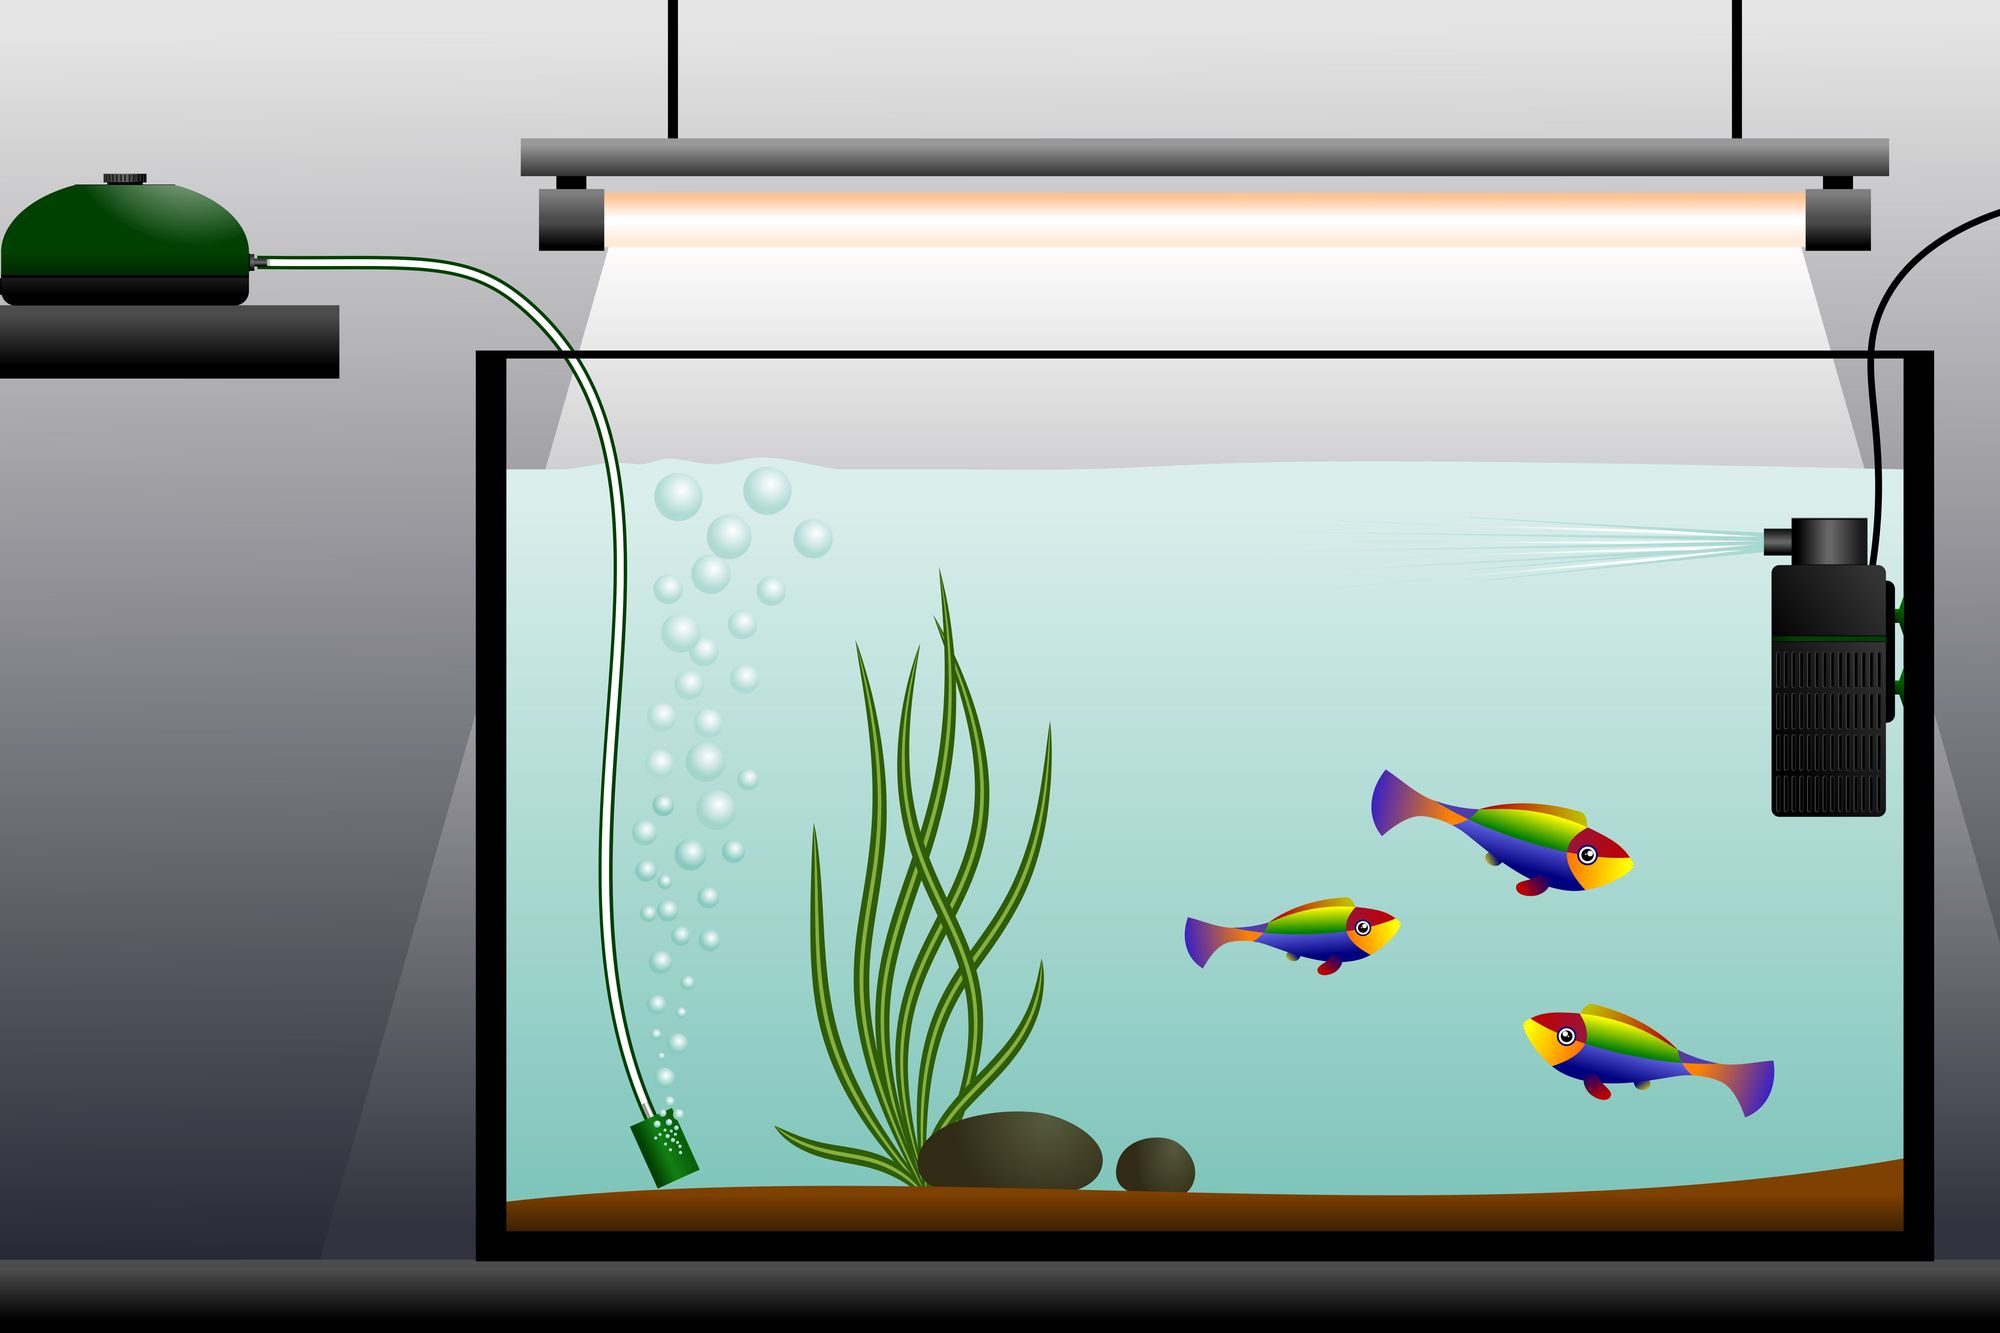 Ce surprenant boitier PC est aussi un aquarium pour vos poissons